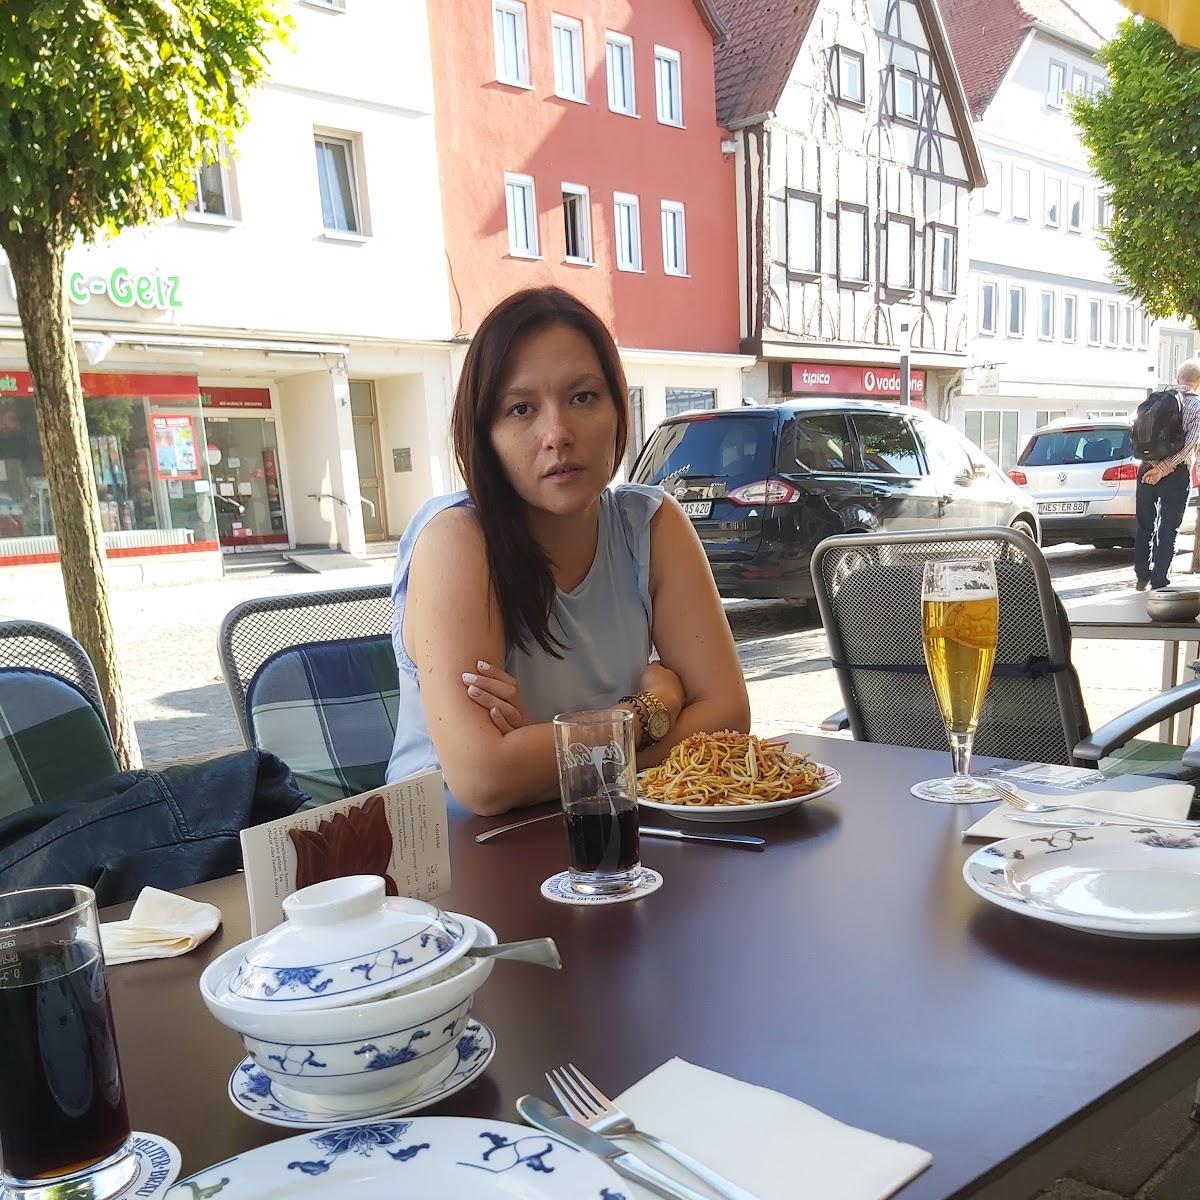 Restaurant "Asia Dragon" in Bad Neustadt an der Saale